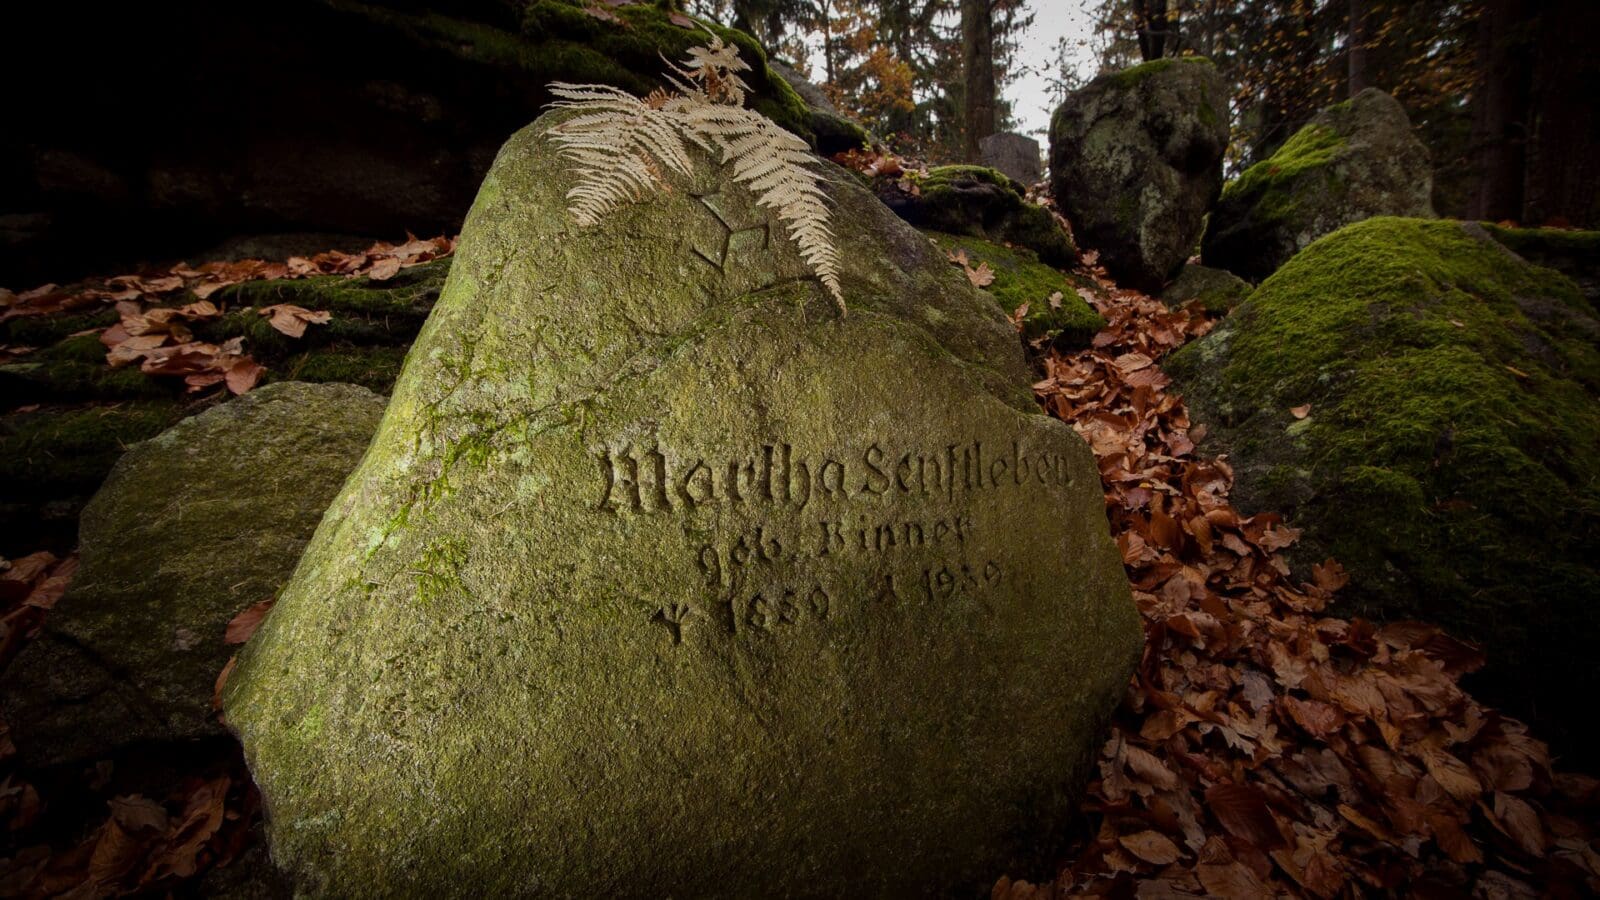  Cmentarzyk czcicieli światła w górskim lesie nieopodal Michałowic